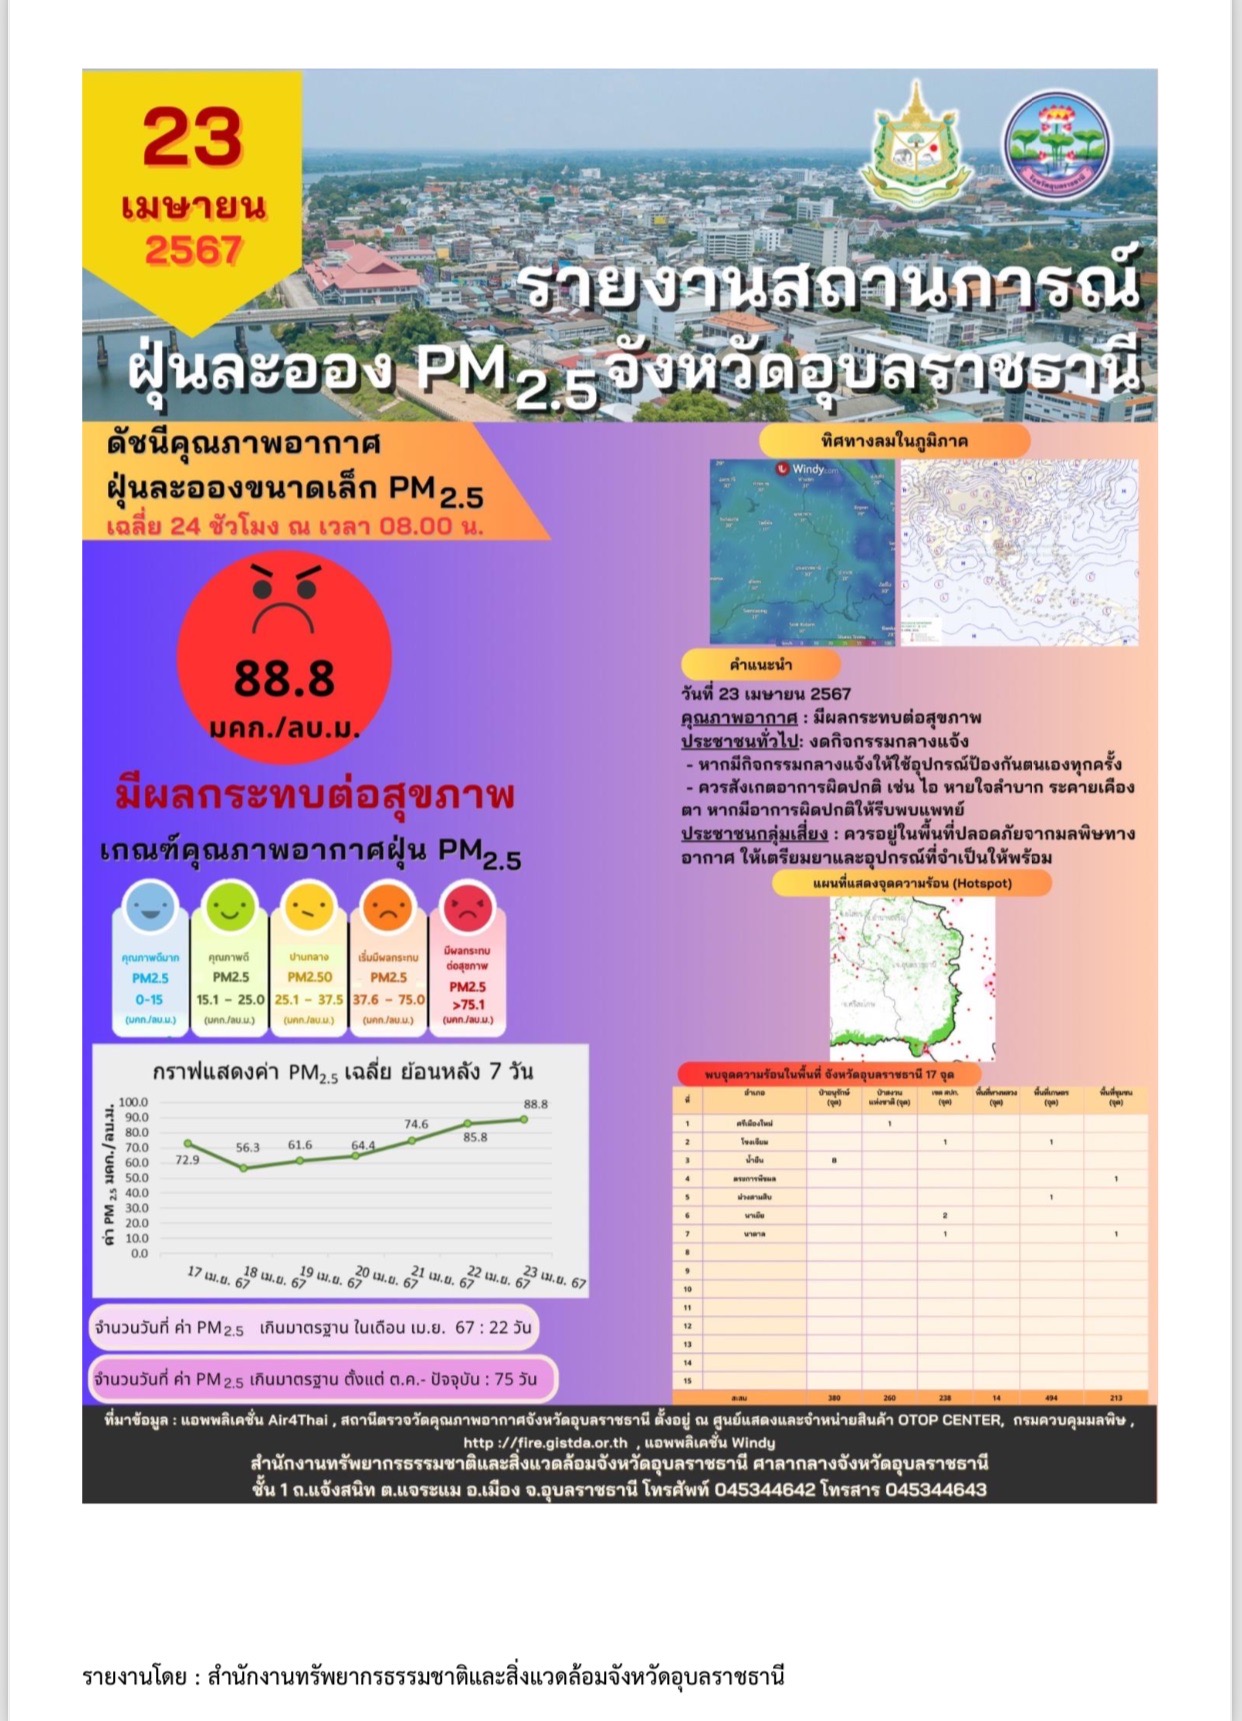 กระทรวงทรัพย์ฯ เตรียมตั้งศูนย์ปฏิบัติการแก้ไข PM 2.5 ที่อุบลฯ 